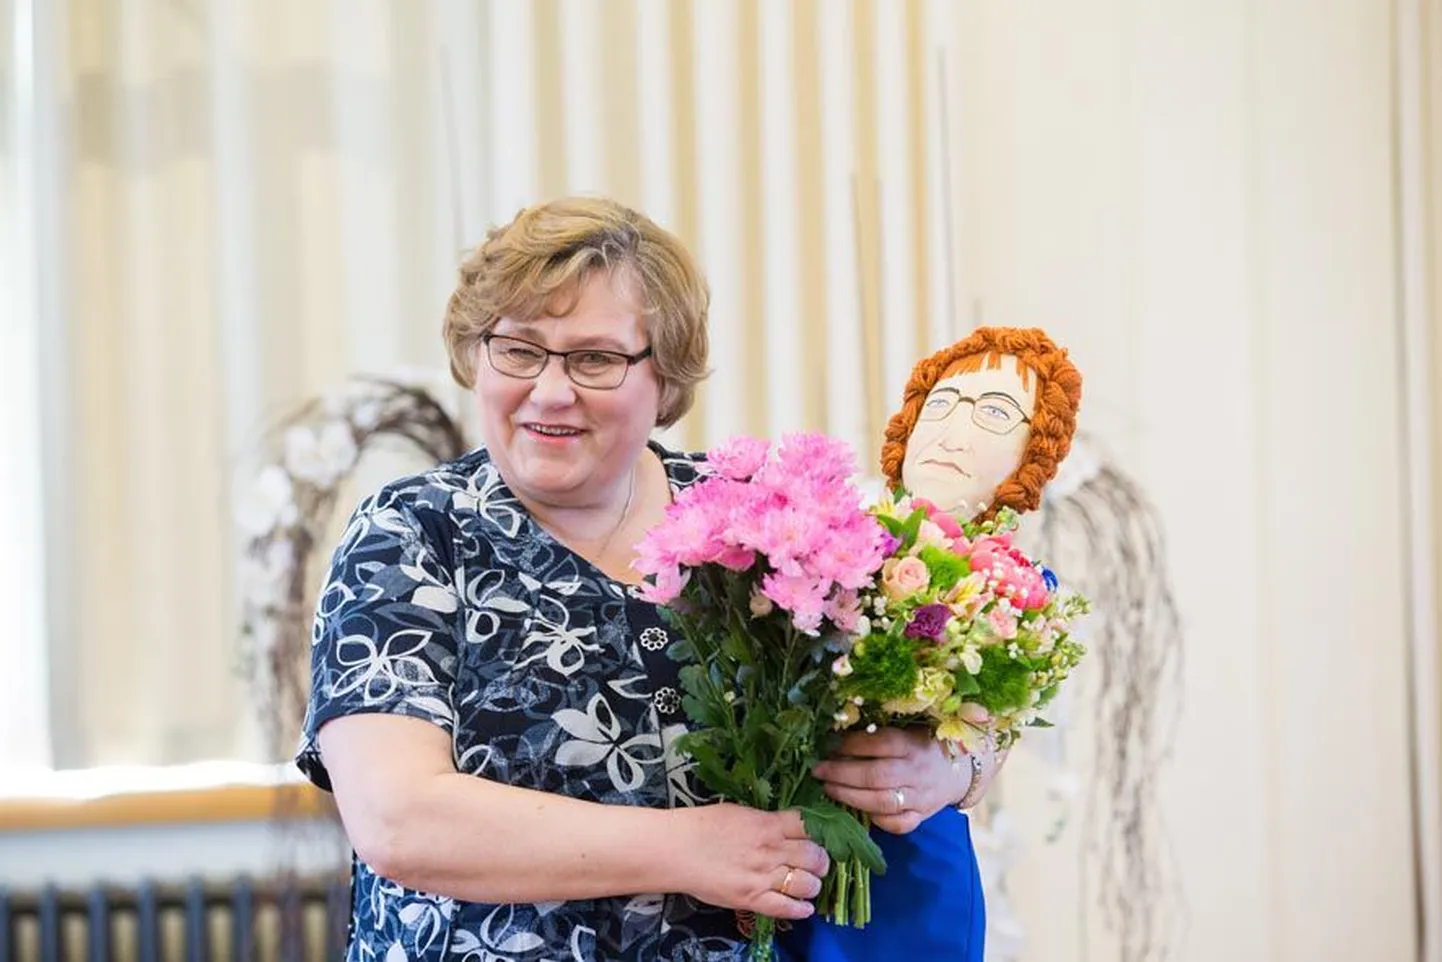 Kaks nädalat tagasi Paide raekojas olnud Järvamaa aasta ema tunnustusõhtul sai Silva Kärner kingituseks Resa Tiitsmaa valmistatud nuku.